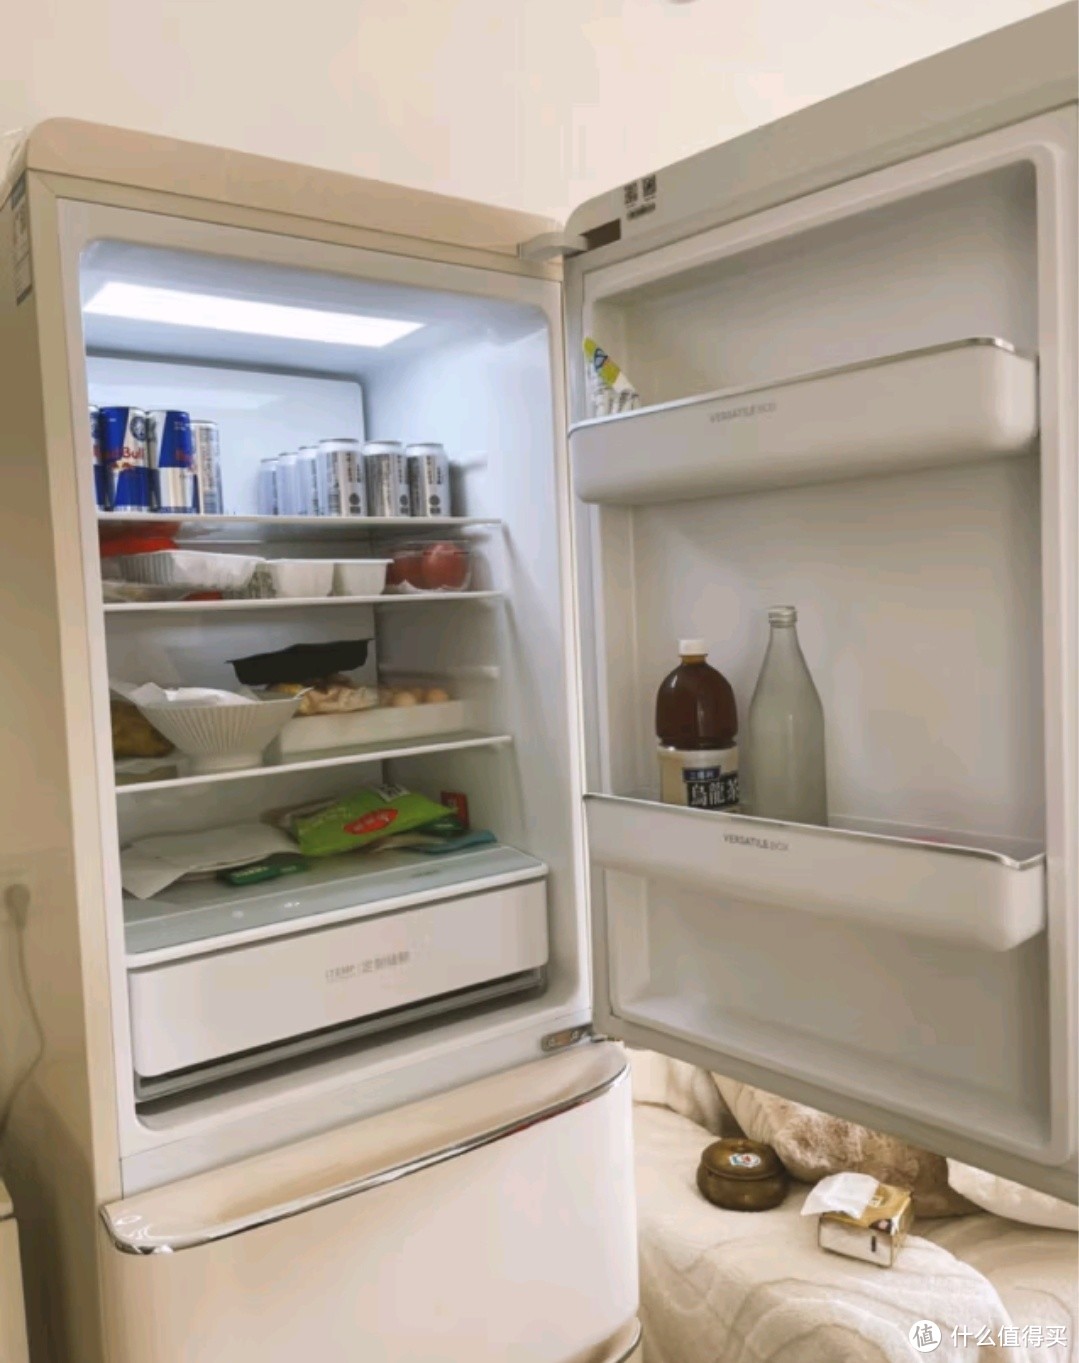 一款冰箱让你的小家更温馨